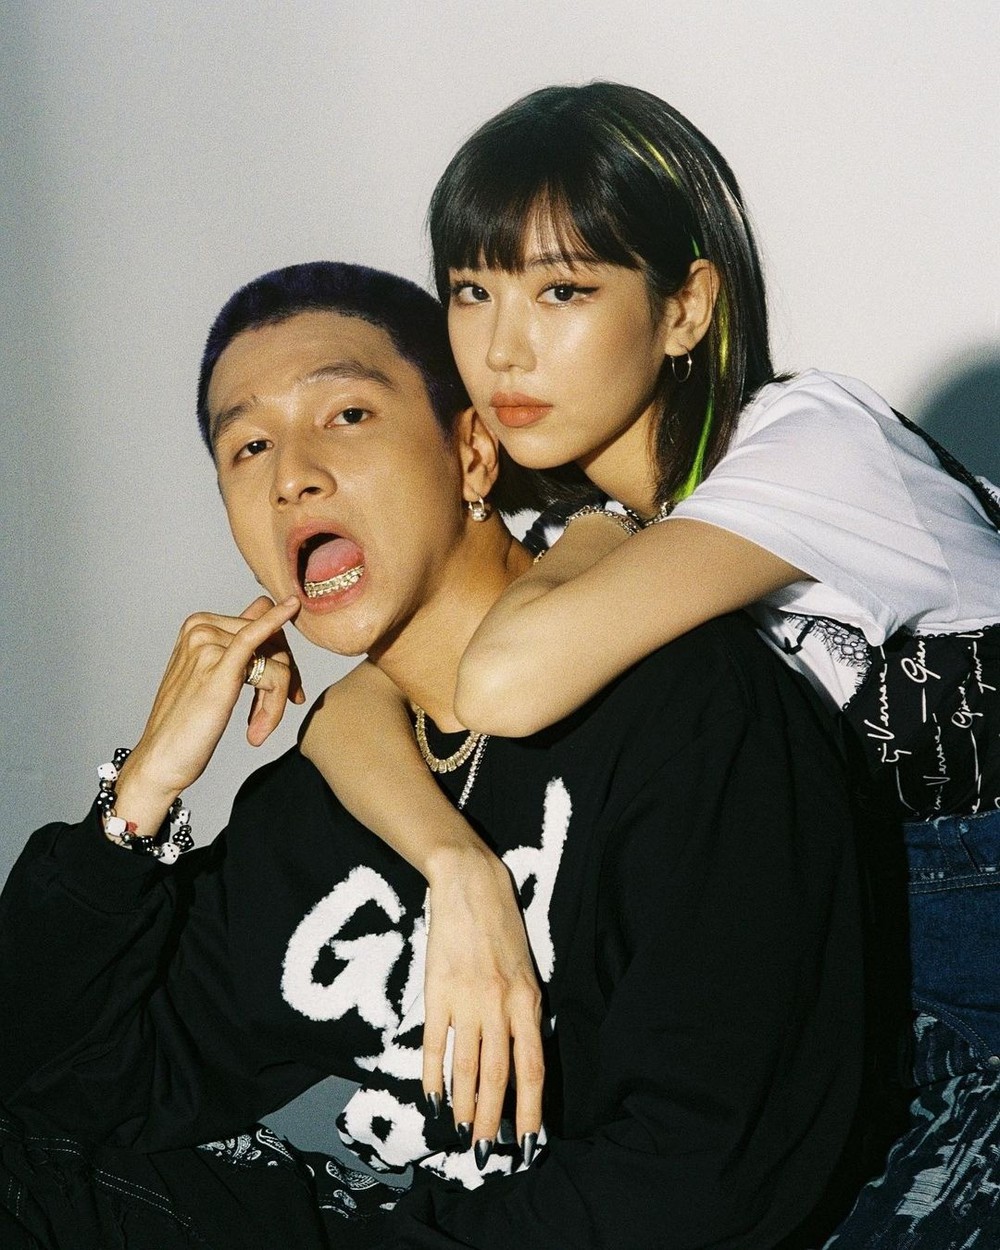 Cuộc tình giữa ca sĩ Min và rapper Hải Phòng bị chỉ trích ích kỷ đội lốt lụy tình - Ảnh 3.